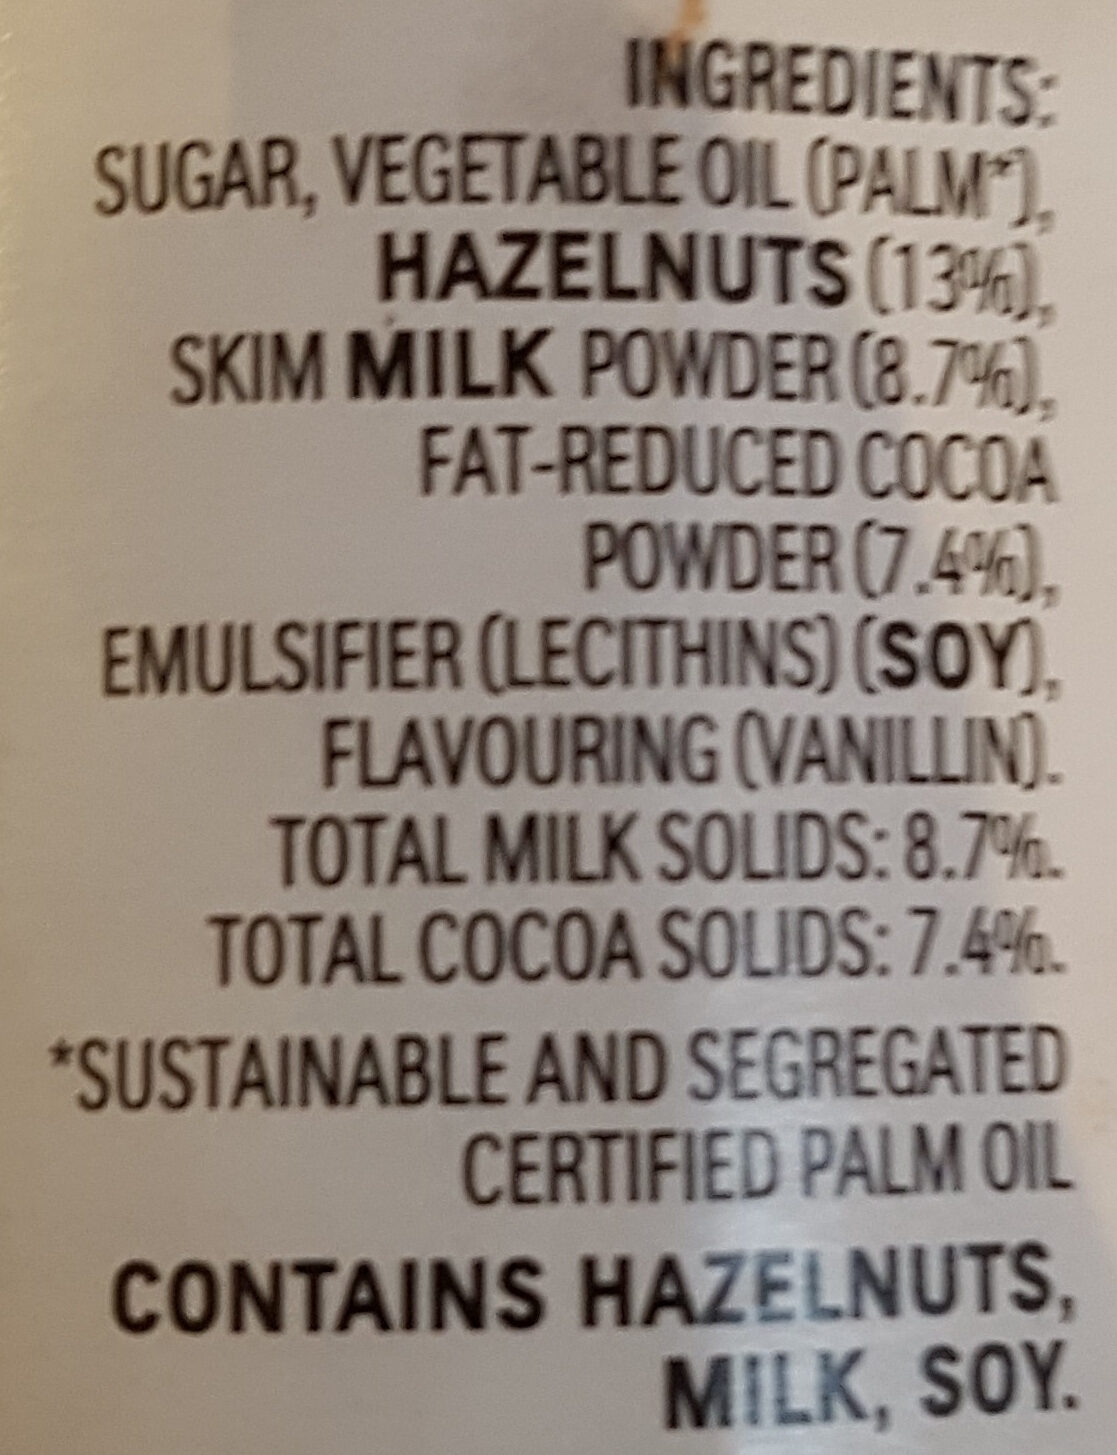 Nutella - Ingredients